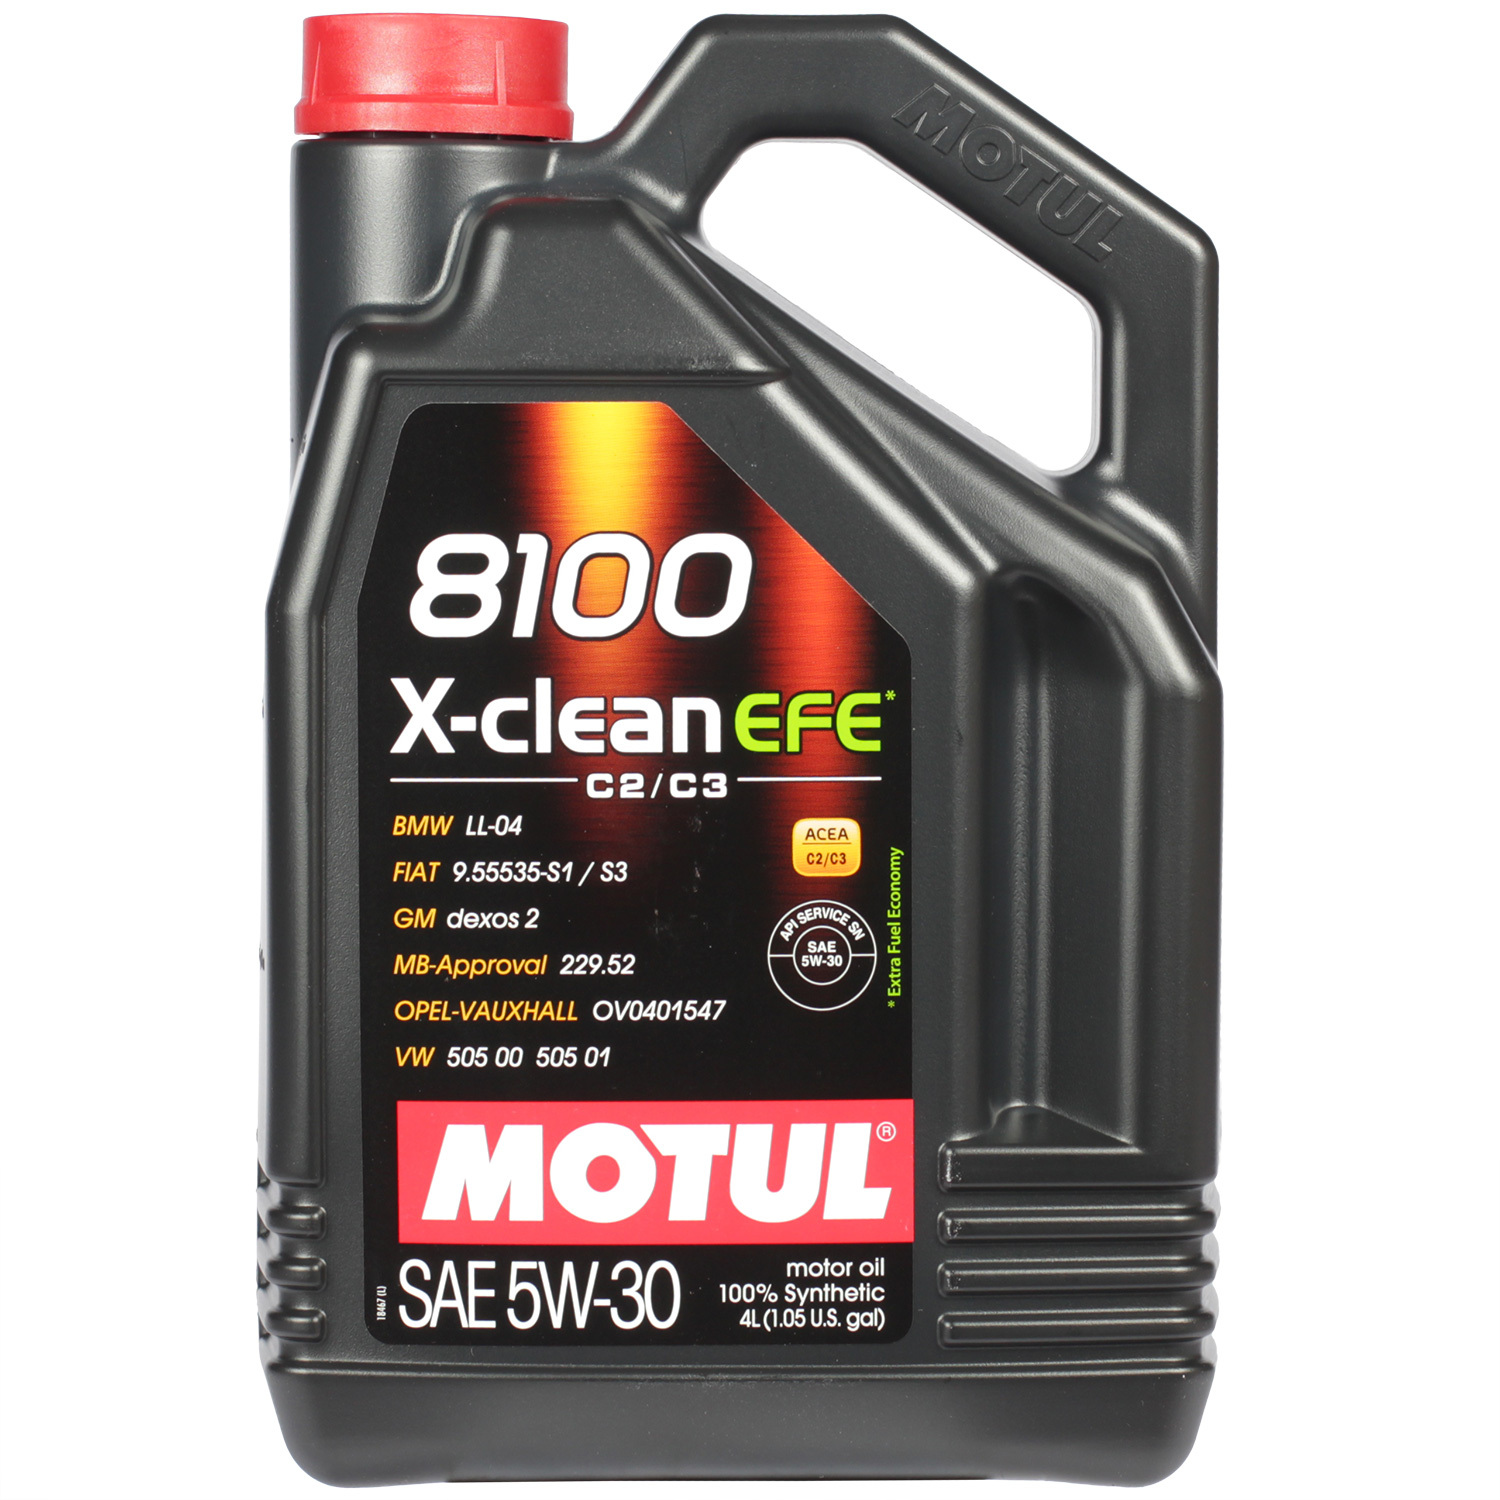 Motul Моторное масло Motul 8100 X-clean EFE 5W-30, 4 л motul моторное масло motul 8100 eco nergy 5w 30 4 л